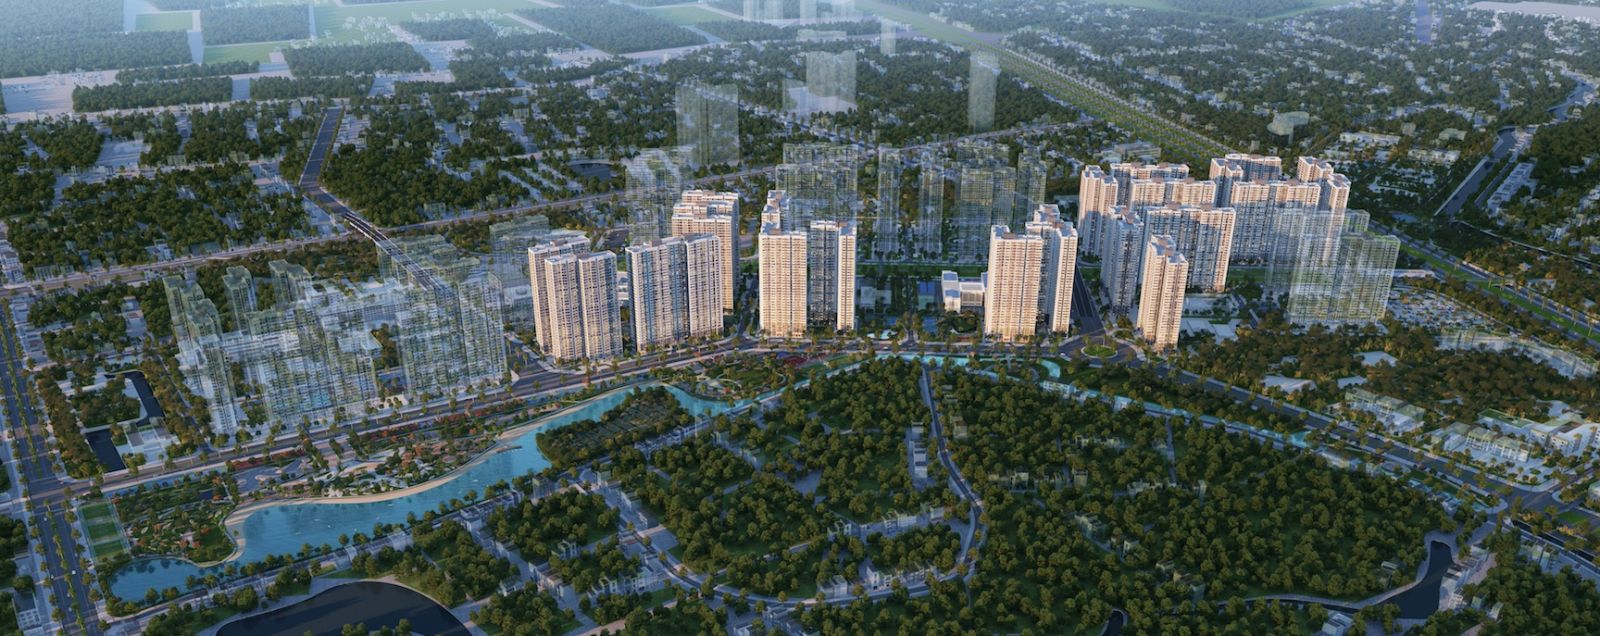  Đại đô thị thông minh hiện thực hóa ước mơ của người Việt (Ảnh minh họa)